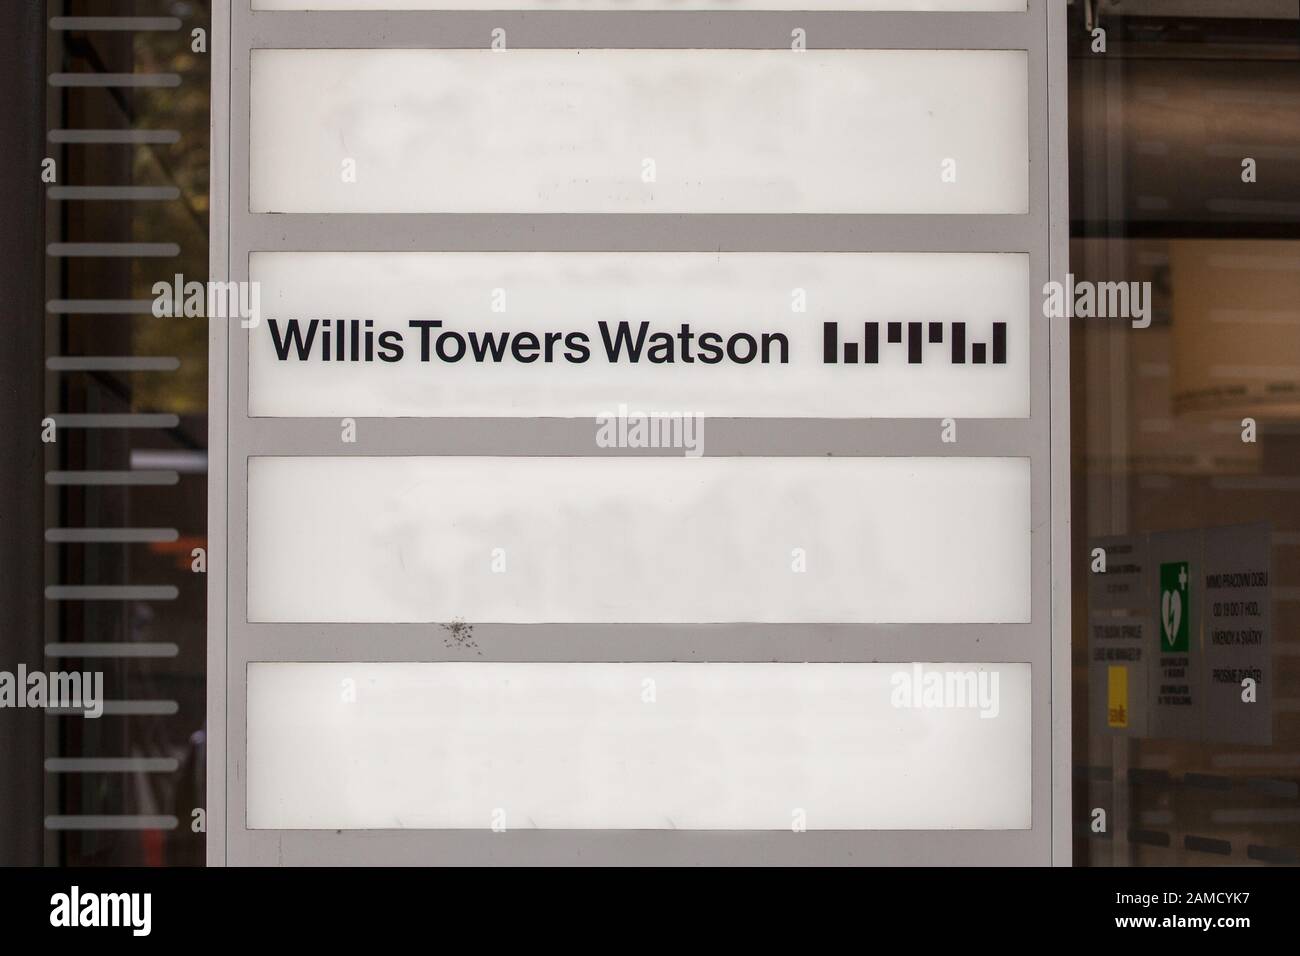 Praga, CECHIA - 31 OTTOBRE 2019: Il logo Willis Towers Watson di fronte al loro ufficio per Praga. Willis Towers Watson è un Insuran britannico e irlandese Foto Stock